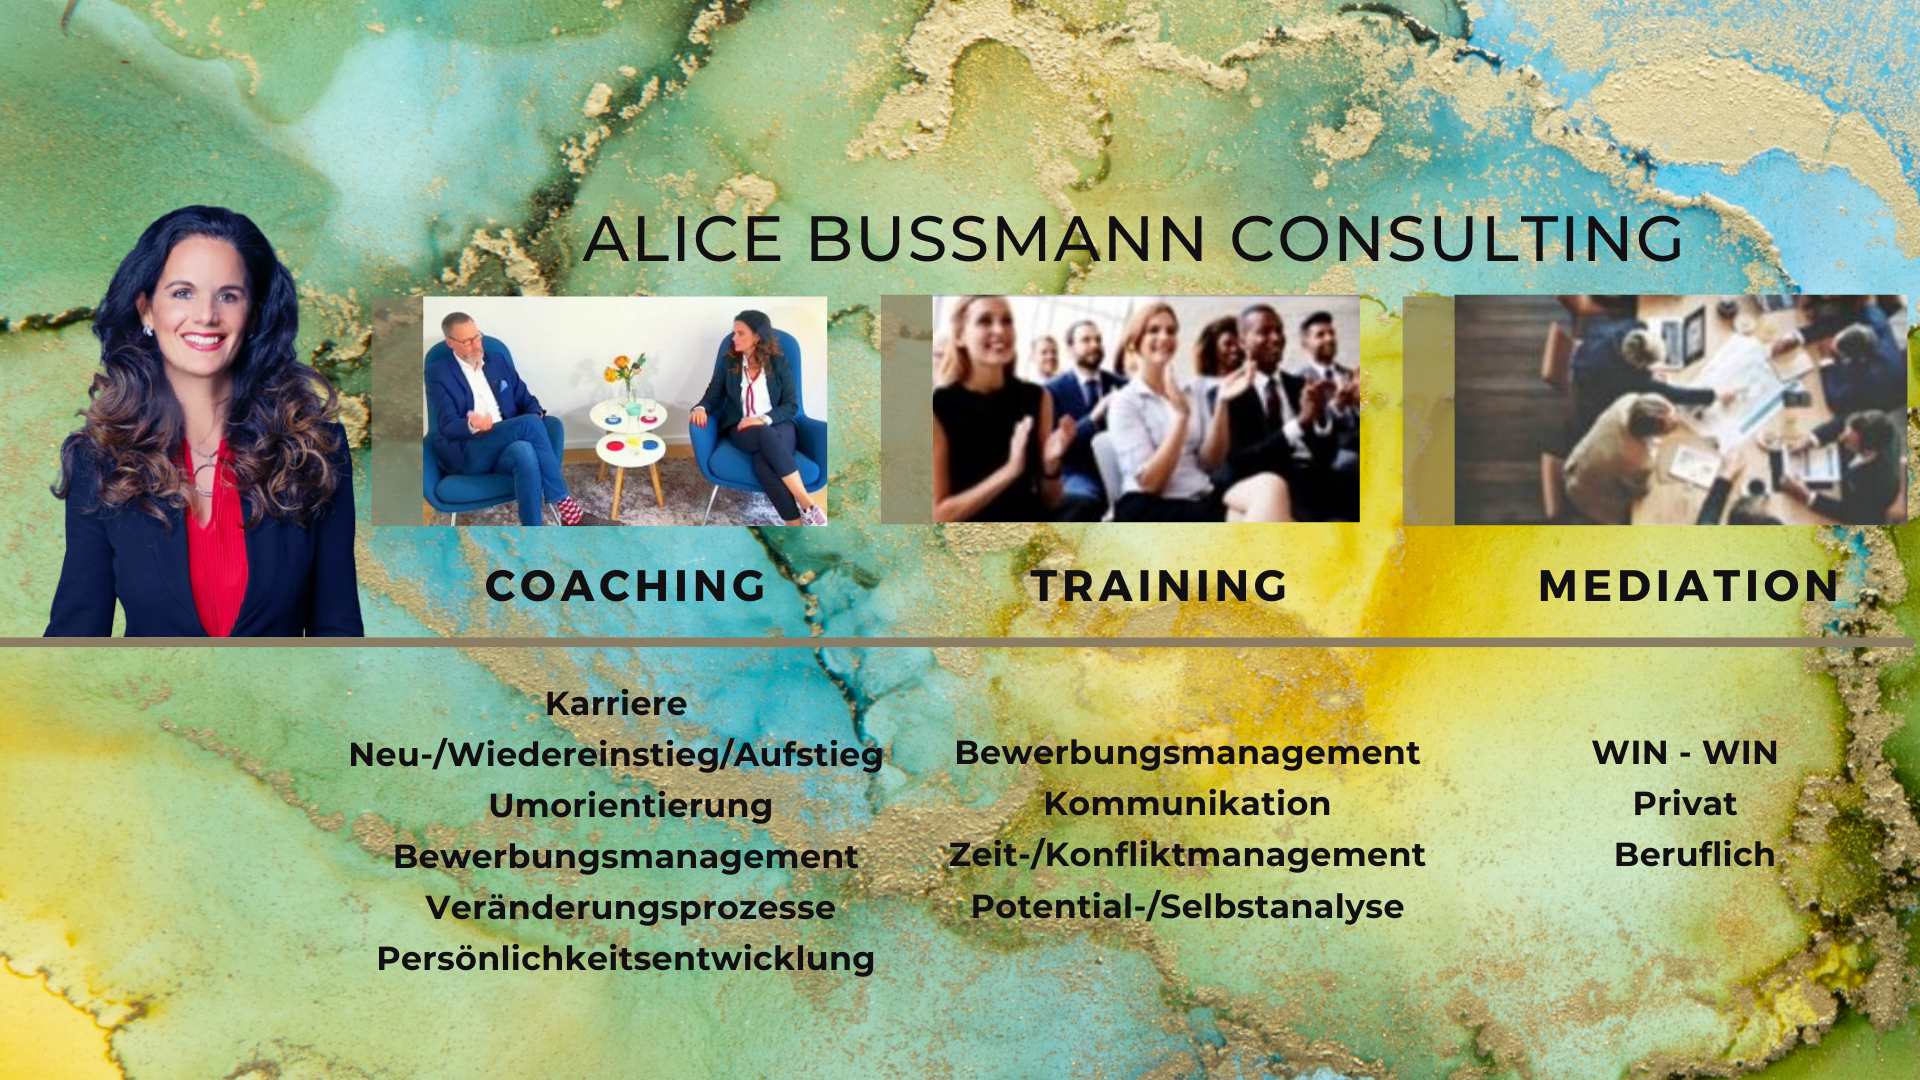 (c) Alicebussmann.consulting